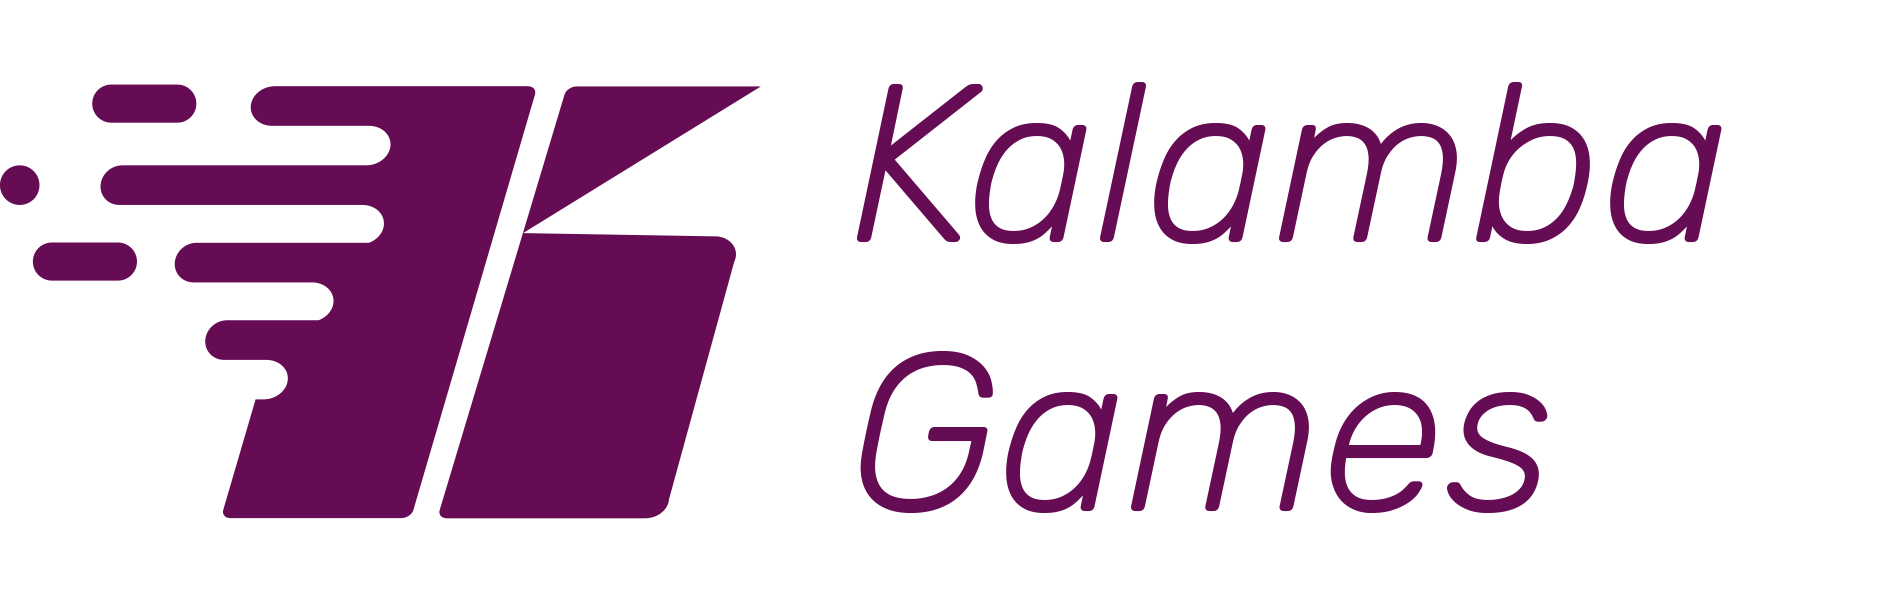 Kalamba_gaming_logo